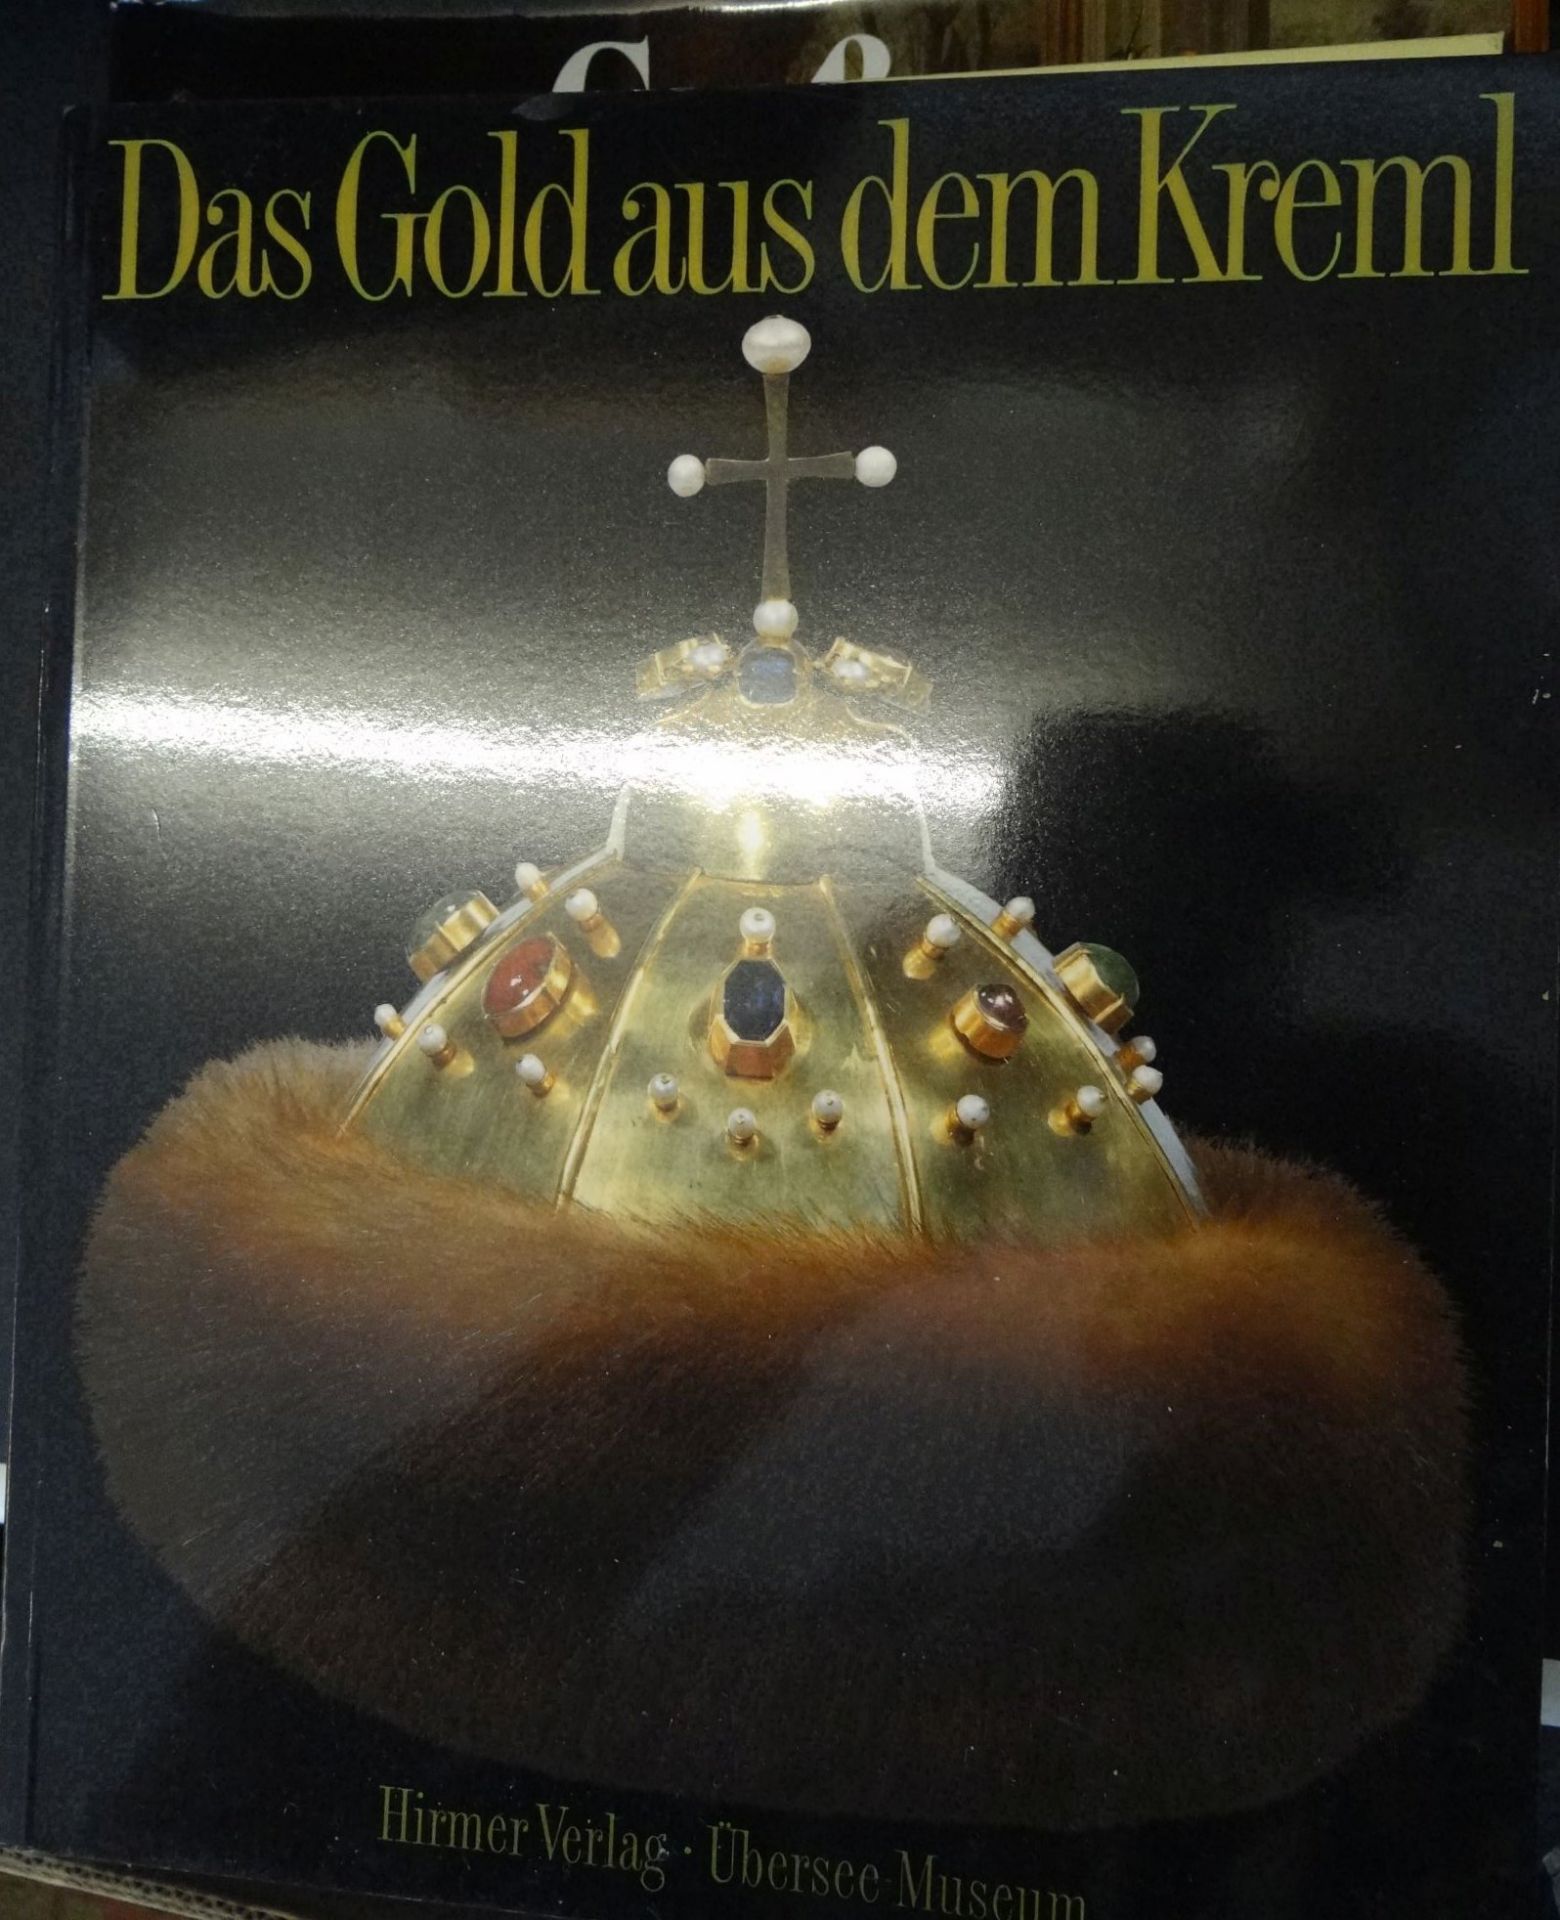 Ausstellung "Das Gold aus dem Kreml" Bremen 1989, reich illustriert